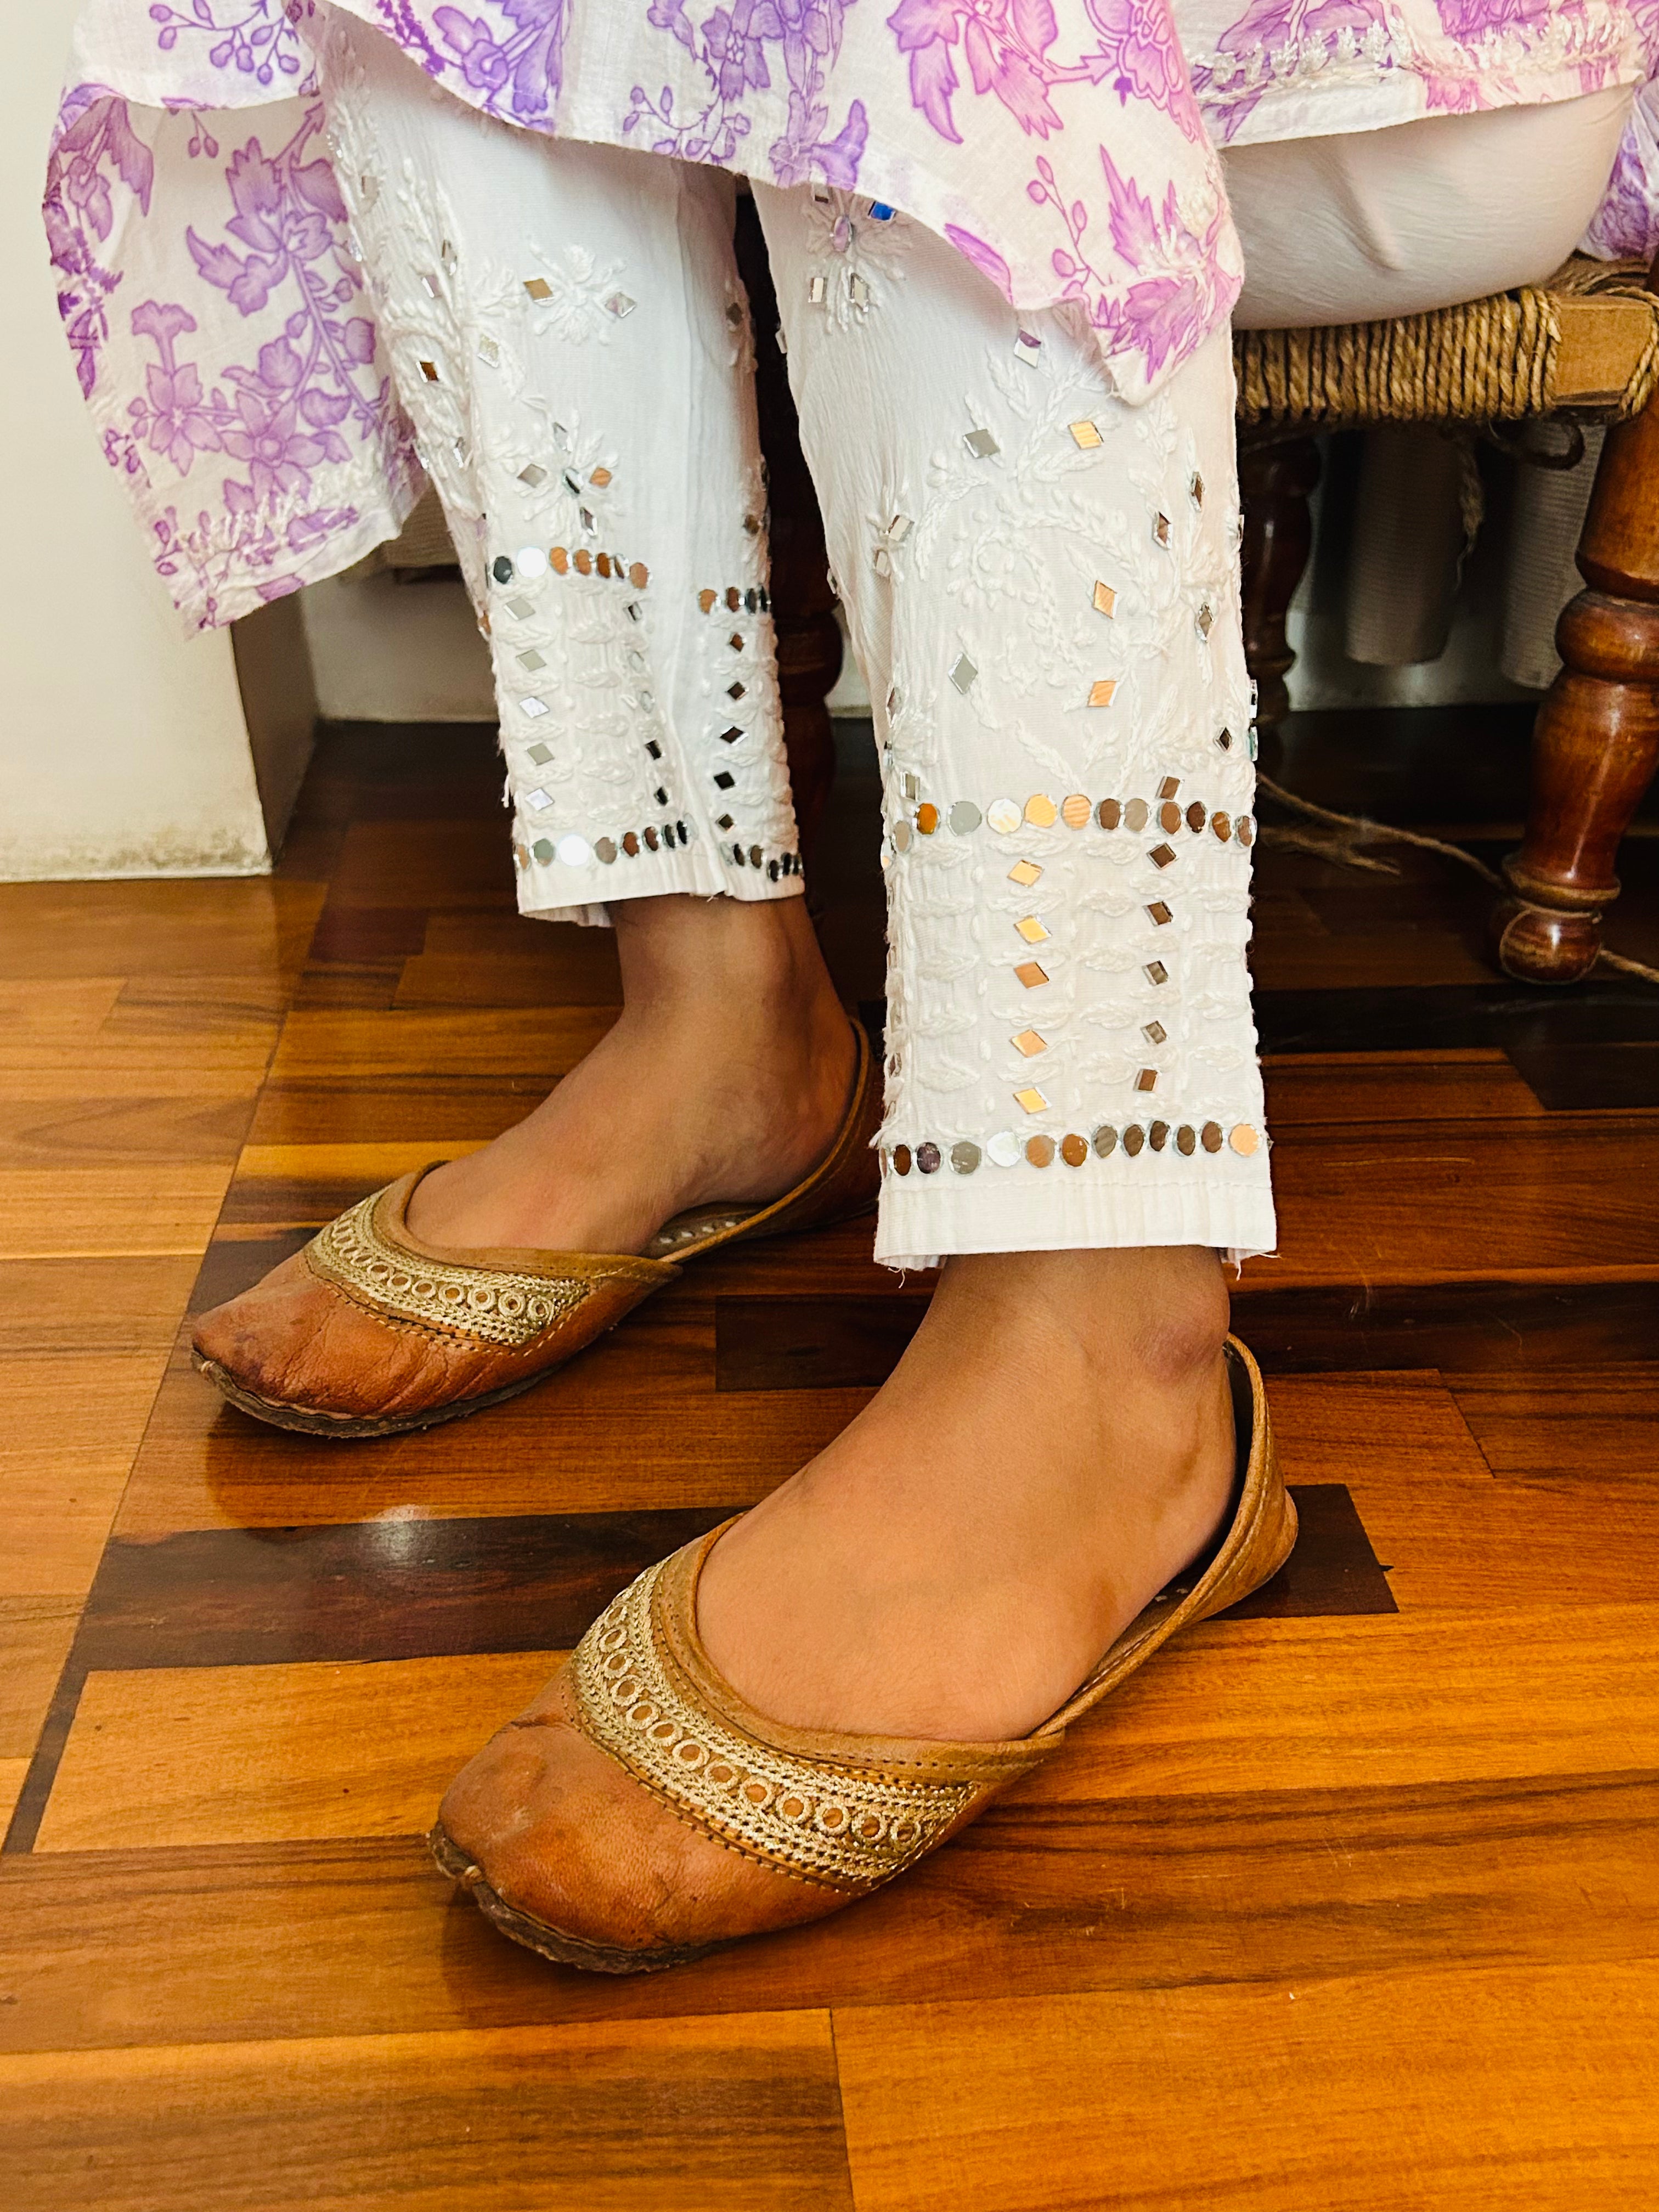 Chinkari straight pants with mirror work